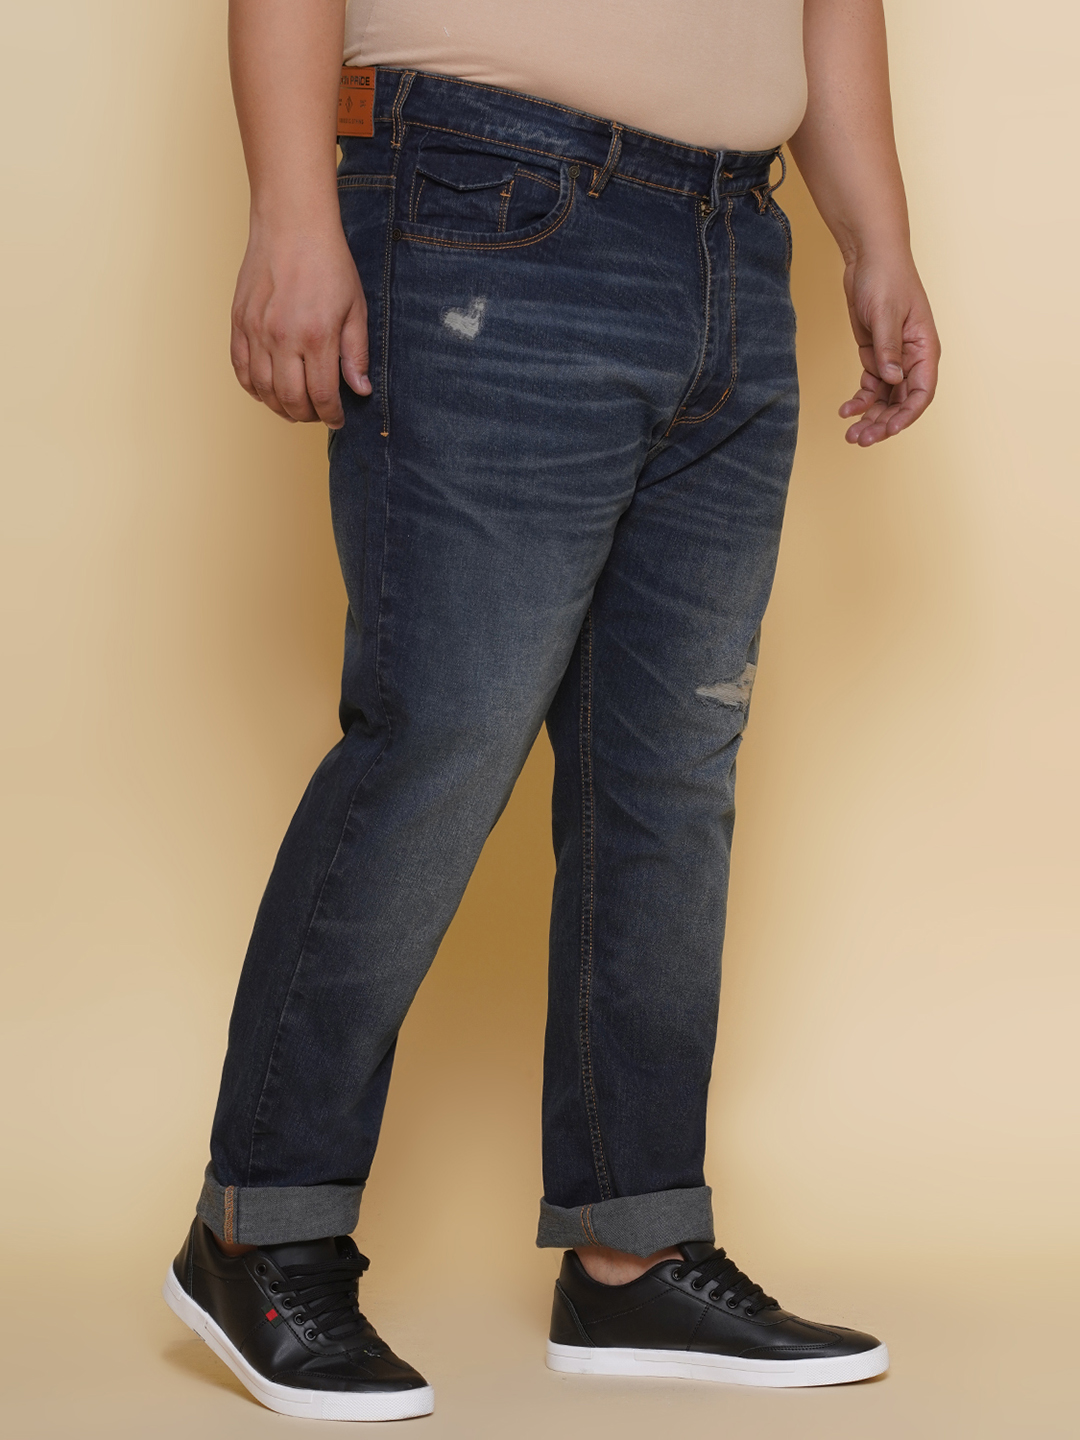 bottomwear/jeans/EJPJ25131/ejpj25131-3.jpg